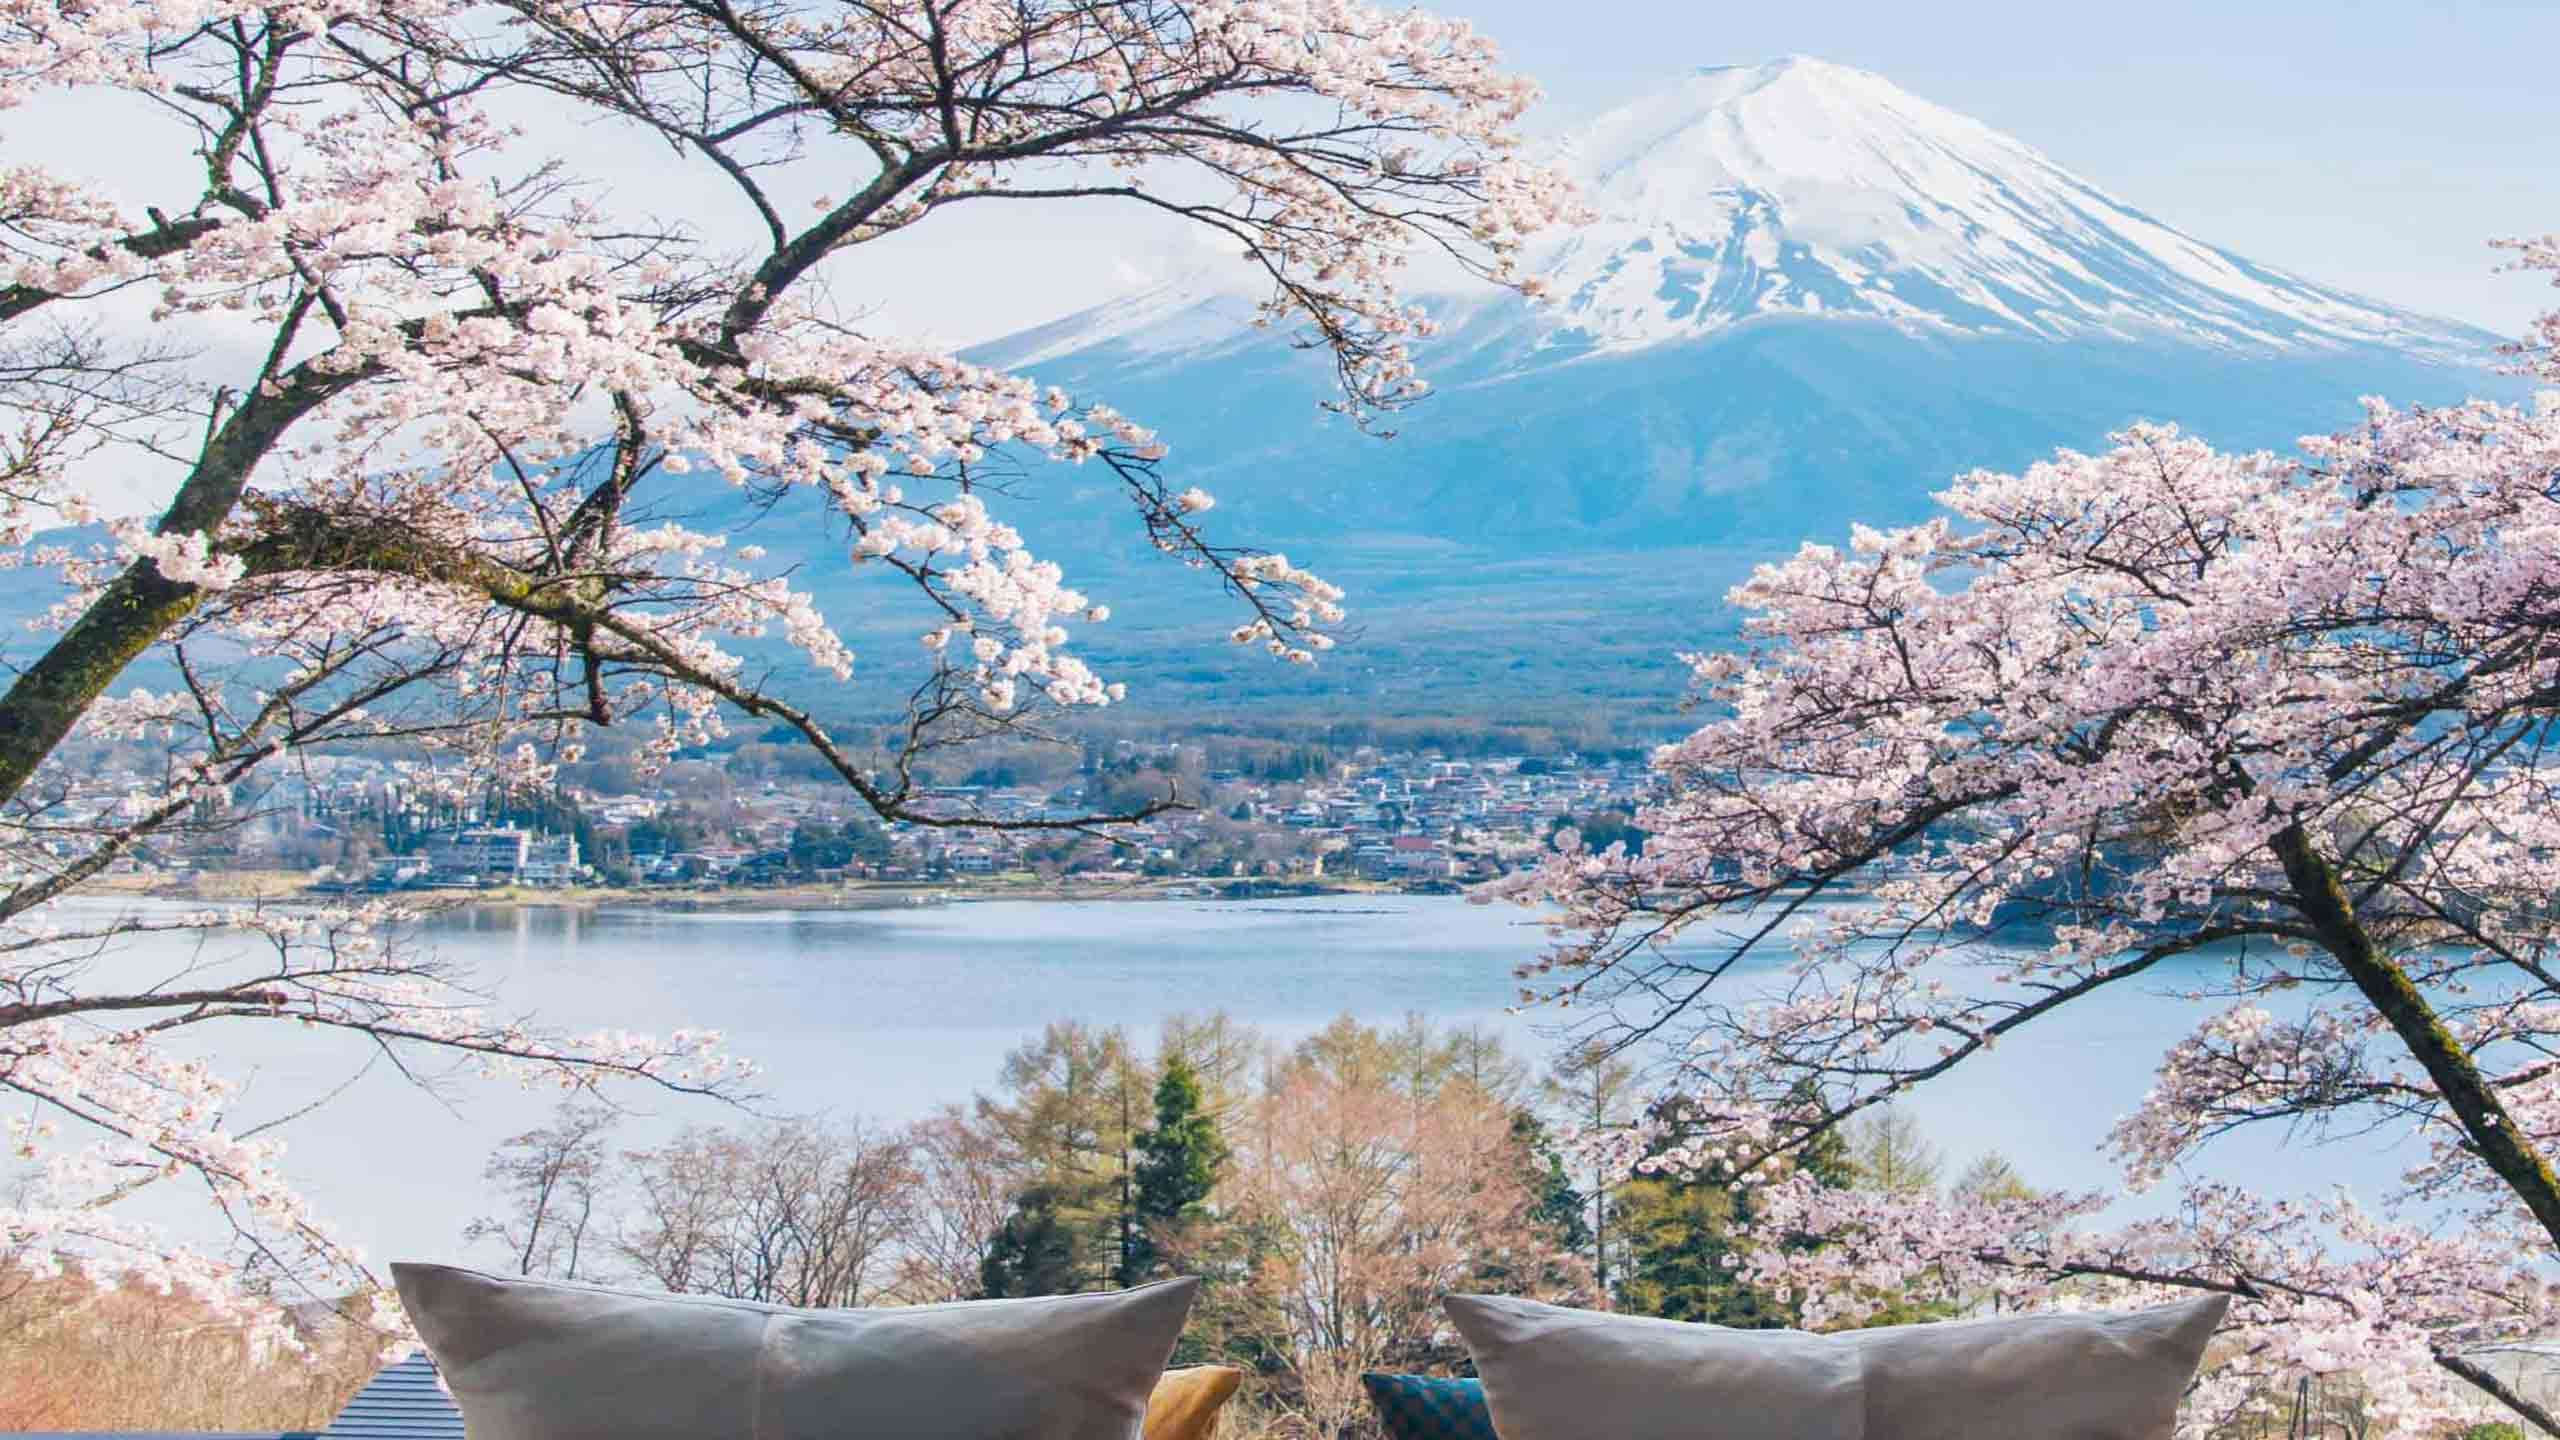 Luxury Fuji & Lake Kawaguchiko Escape 4D3N Walk, Canoe & Cycle, Fully Guided